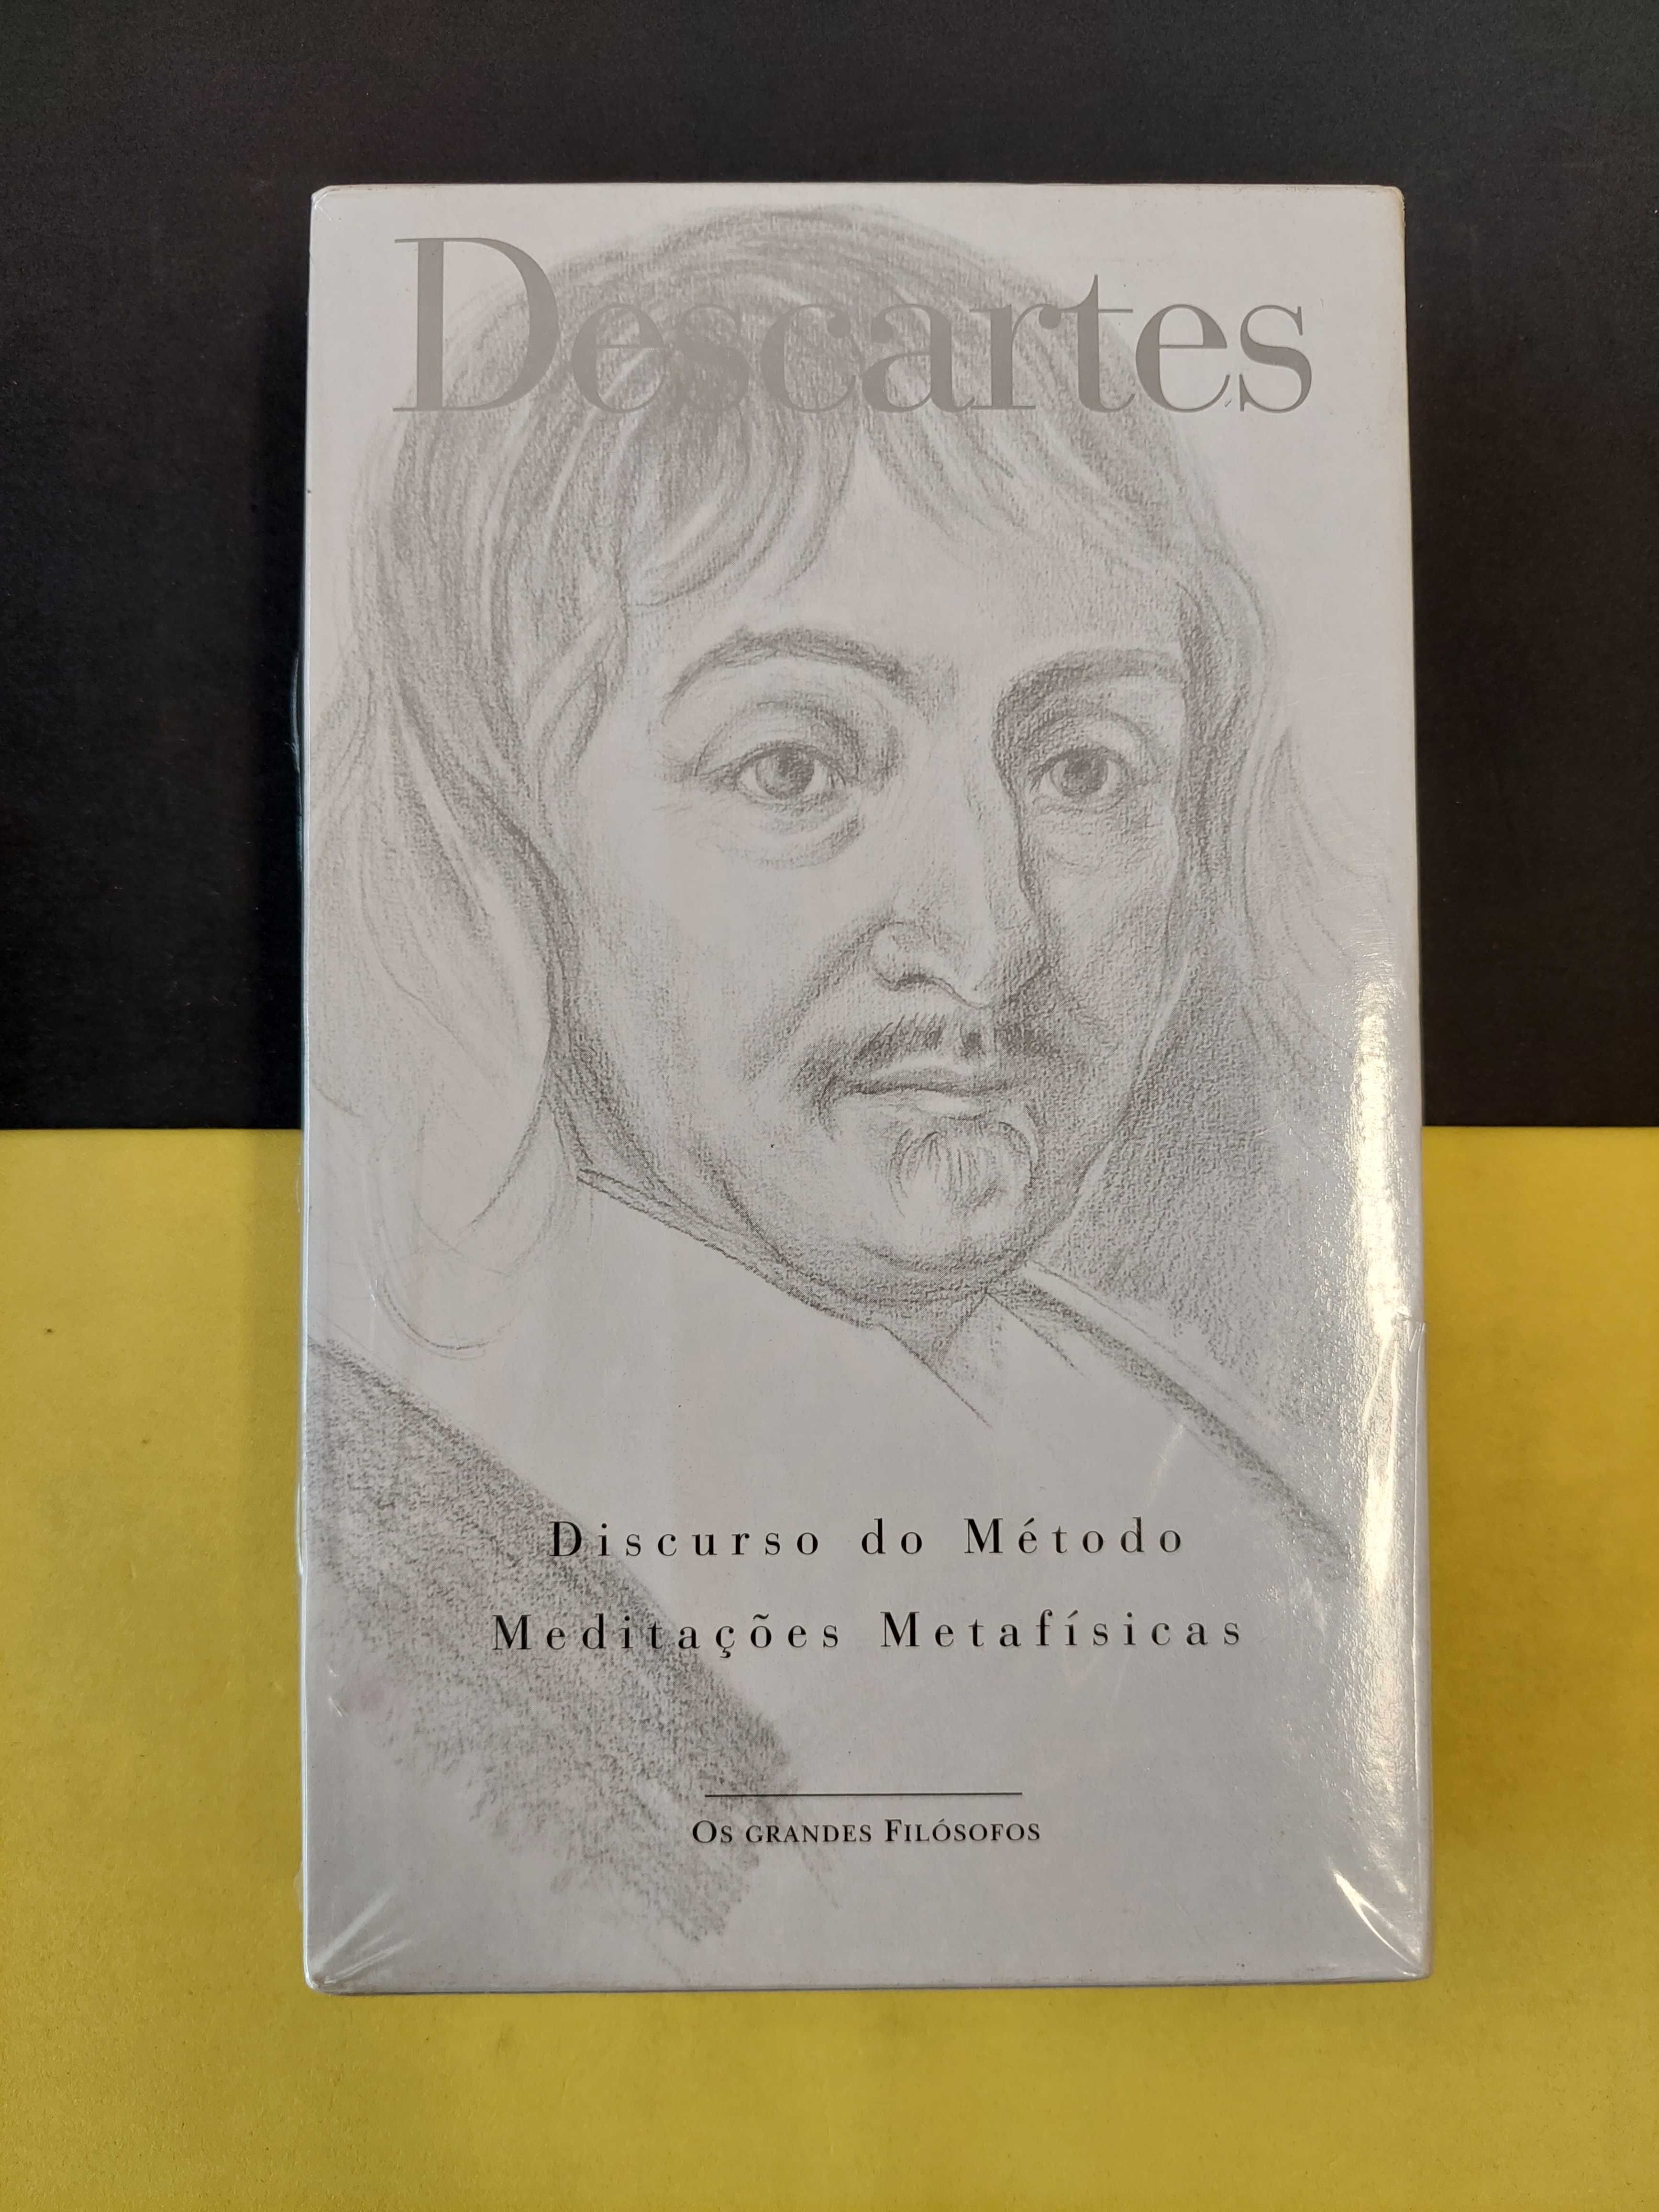 Descartes - Discurso do método meditações metafísicas